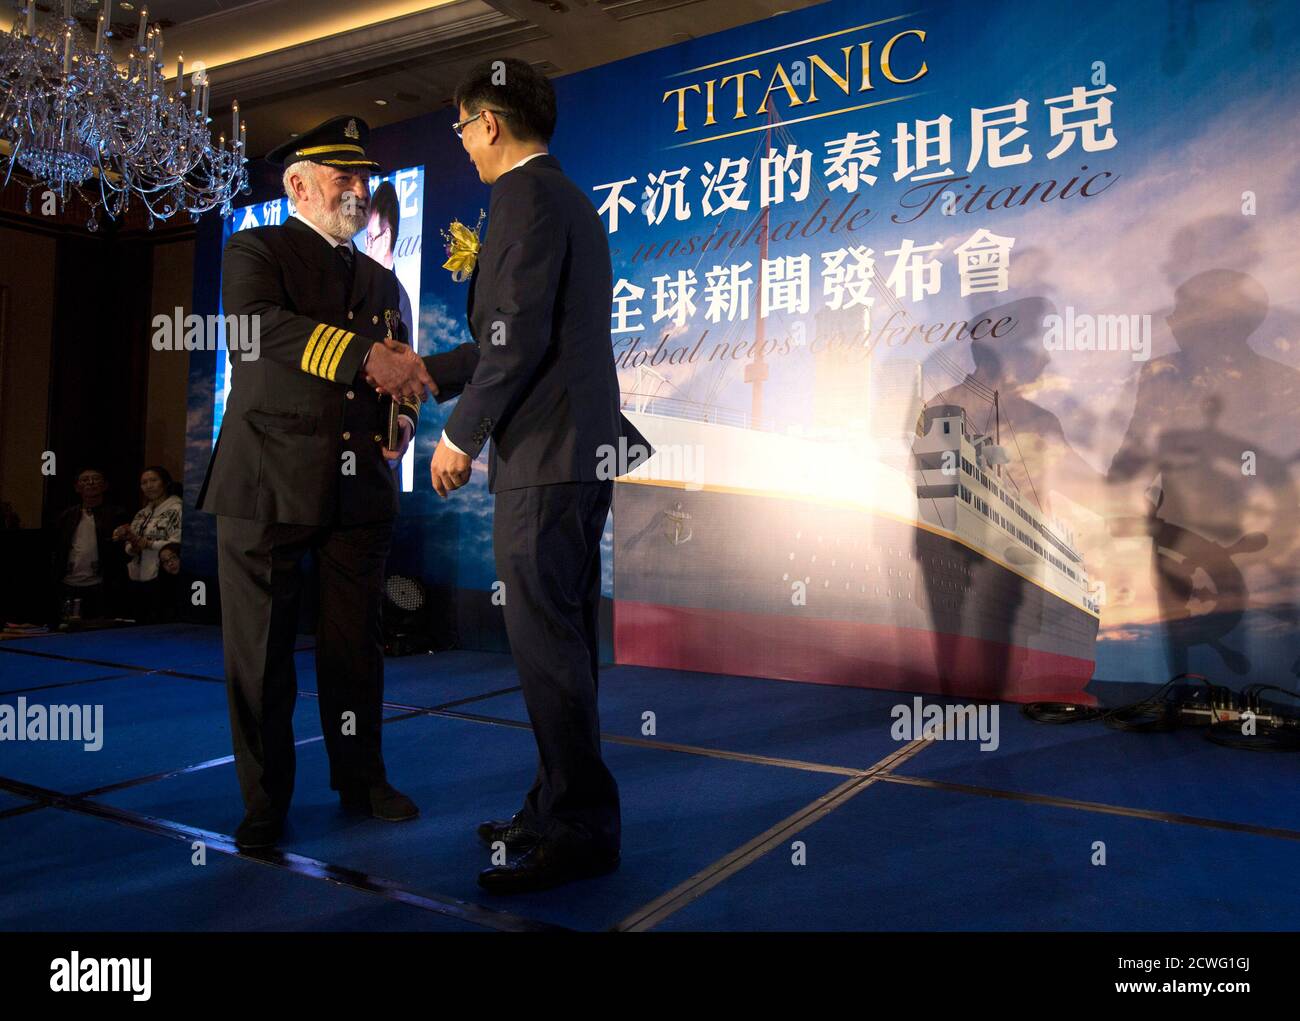 Китайская национальная химическая. Китайский Титаник Сычуань. Титаник 2 Сычуань. Копия Титаника в Китае. Титаник китайцы.